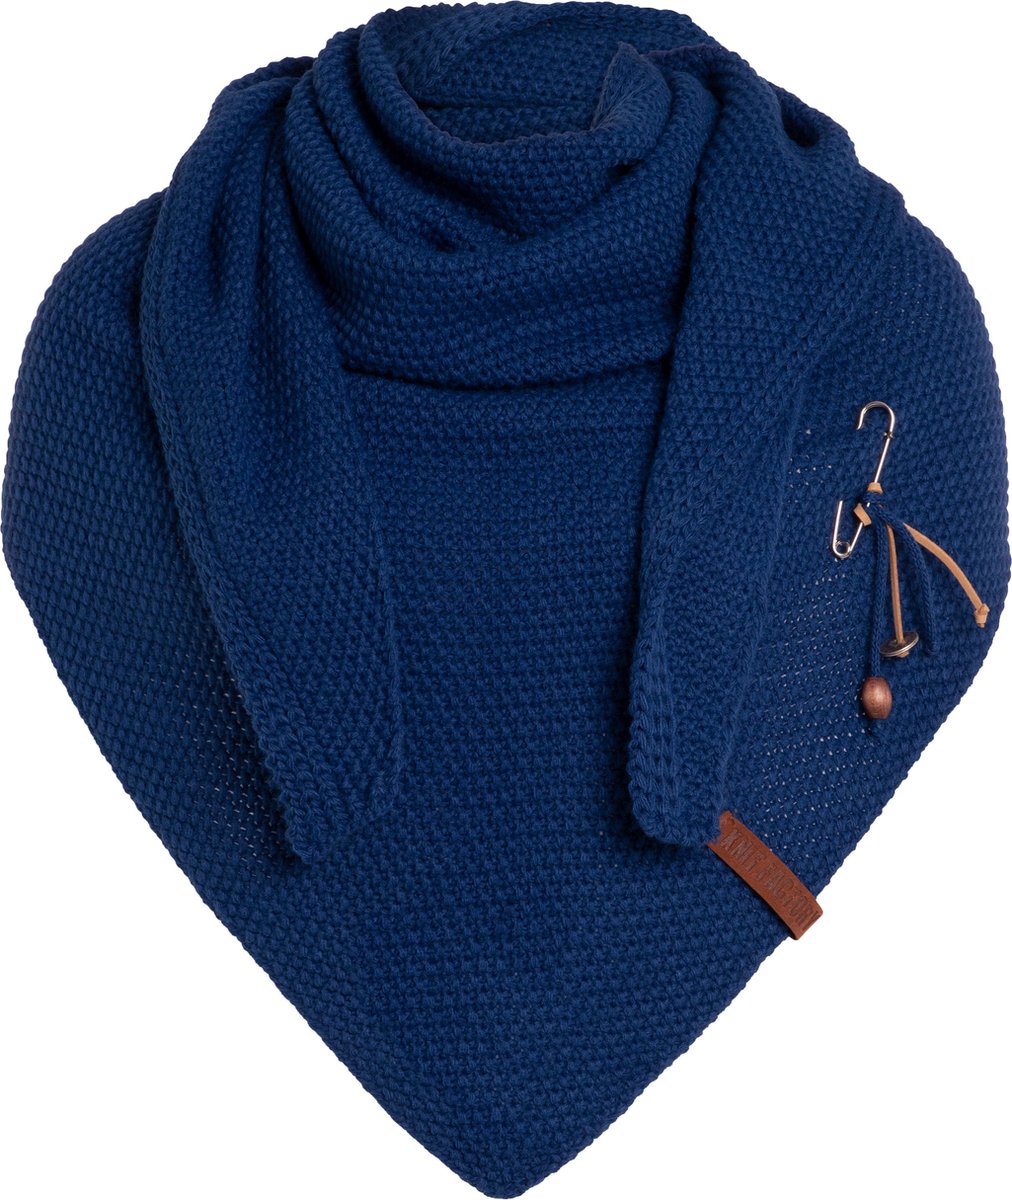 Knit Factory Coco Gebreide Omslagdoek - Driehoek Sjaal Dames - Dames sjaal - Wintersjaal - Stola - Wollen sjaal - Donkerblauwe sjaal - Kings Blue - 190x85 cm - Inclusief sierspeld